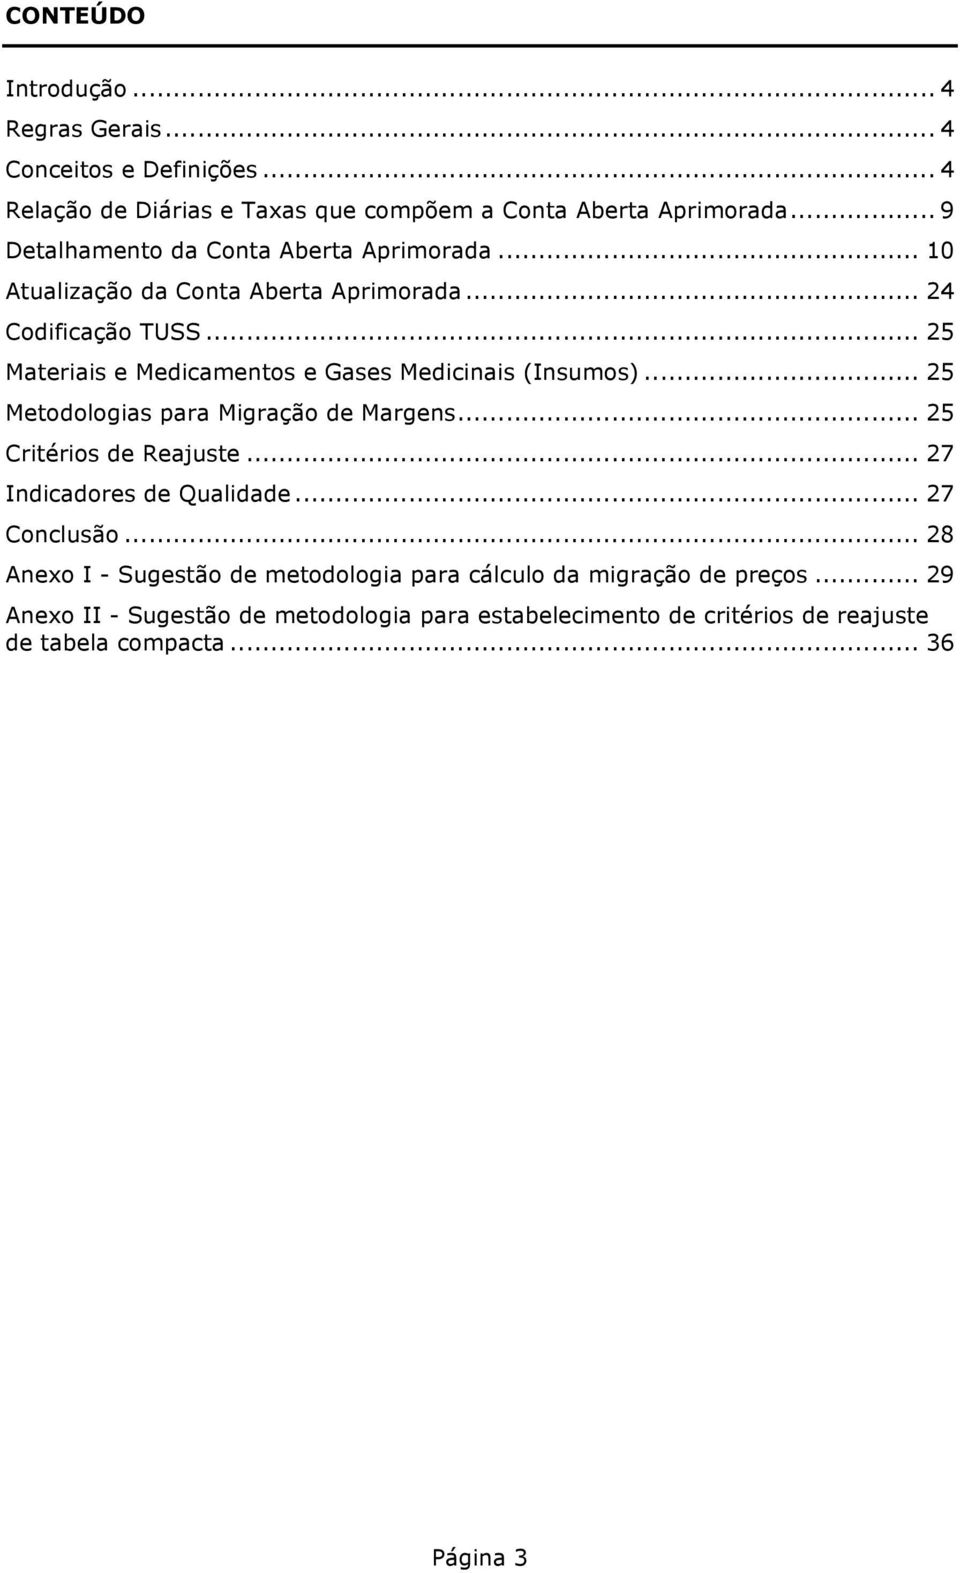 .. 25 Materiais e Medicamentos e Gases Medicinais (Insumos)... 25 Metodologias para Migração de Margens... 25 Critérios de Reajuste.